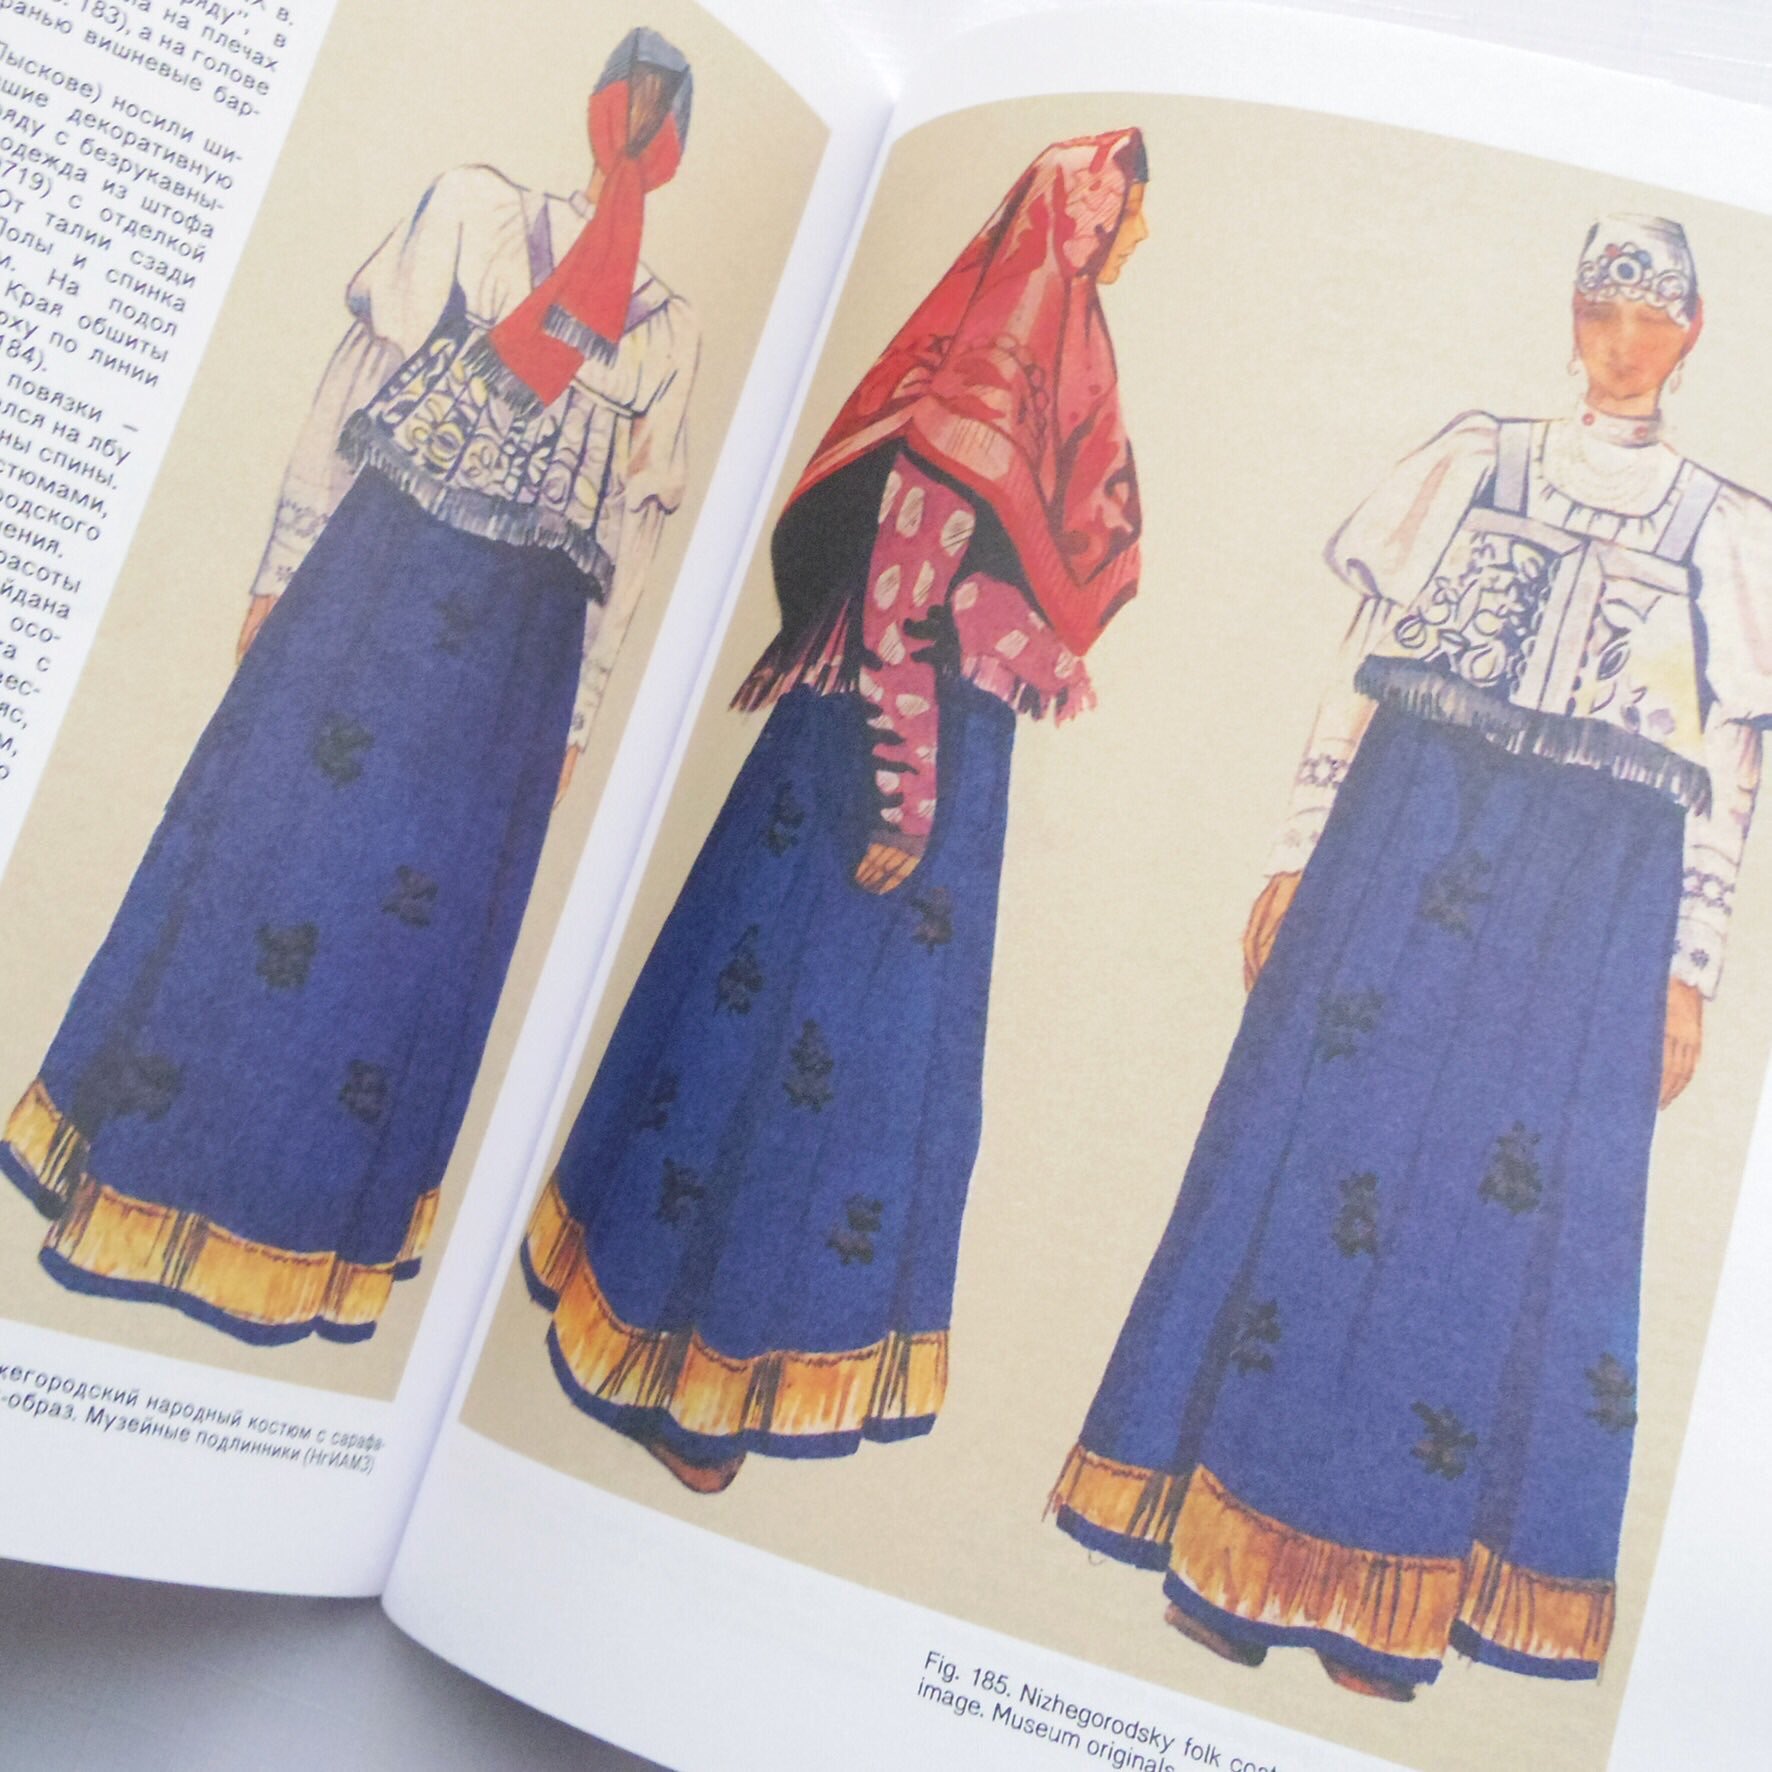 Twitter 上的 Art Book Iskusstvo ロシアの民族衣装本 サラファン ルバシカ シューバなど ロシアの伝統的な民族衣装を豊富な イラスト図版で解説 簡単な裁断図もあり イラストや衣装製作の資料として価値がある書籍です T Co Adxxdagzzu T Co